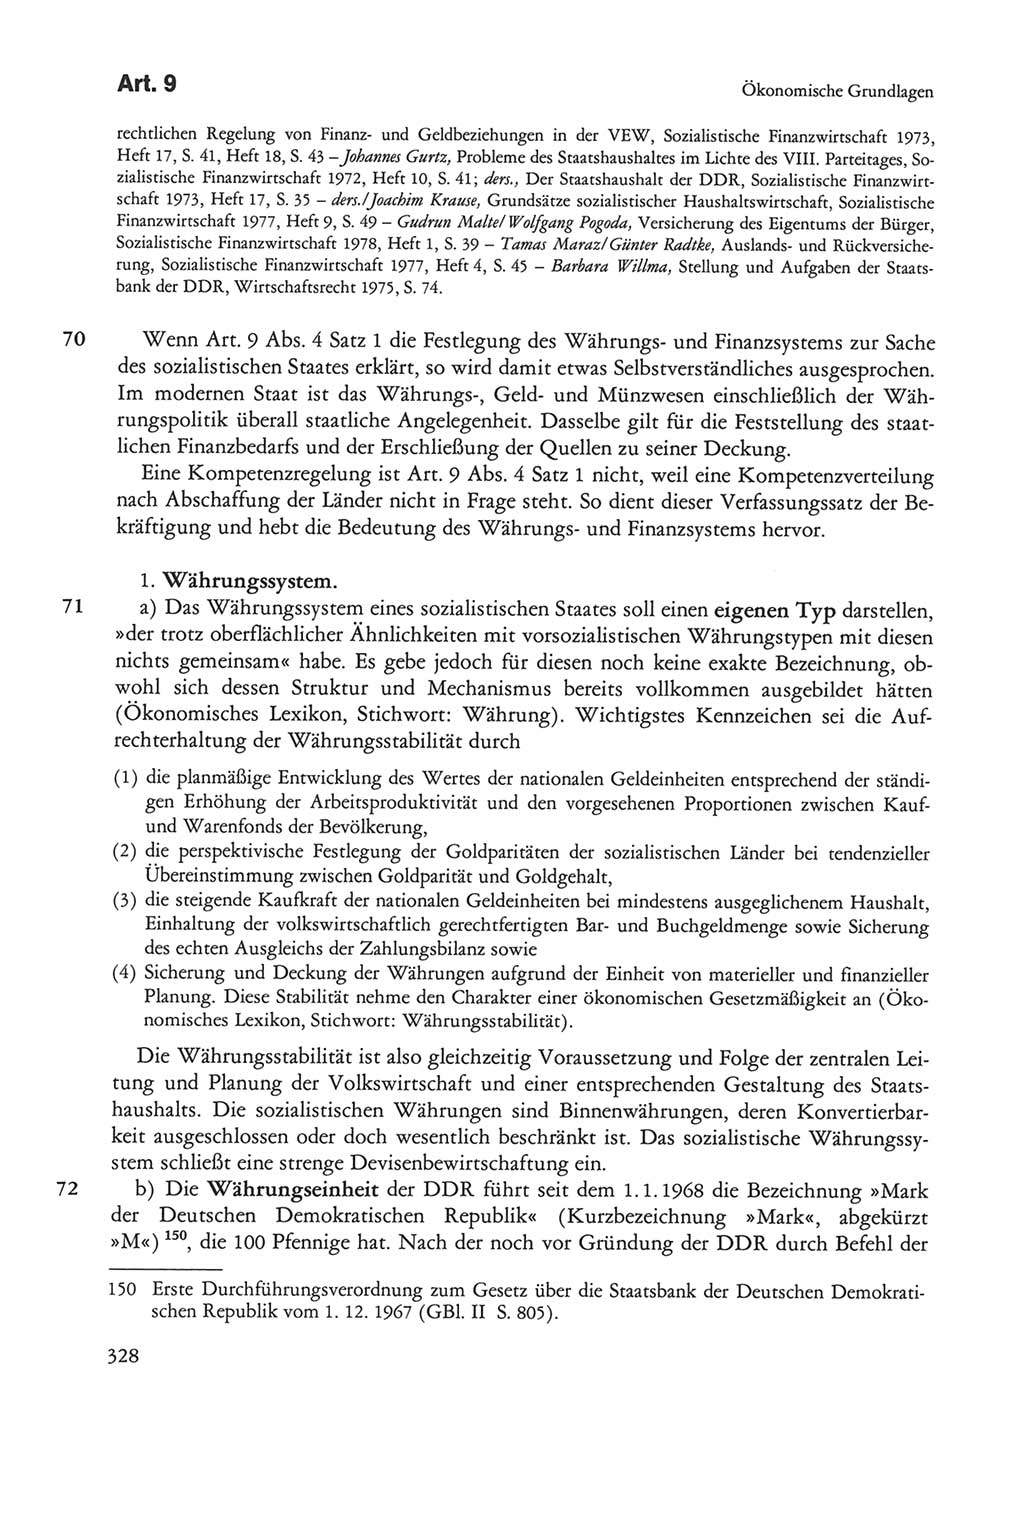 Die sozialistische Verfassung der Deutschen Demokratischen Republik (DDR), Kommentar 1982, Seite 328 (Soz. Verf. DDR Komm. 1982, S. 328)